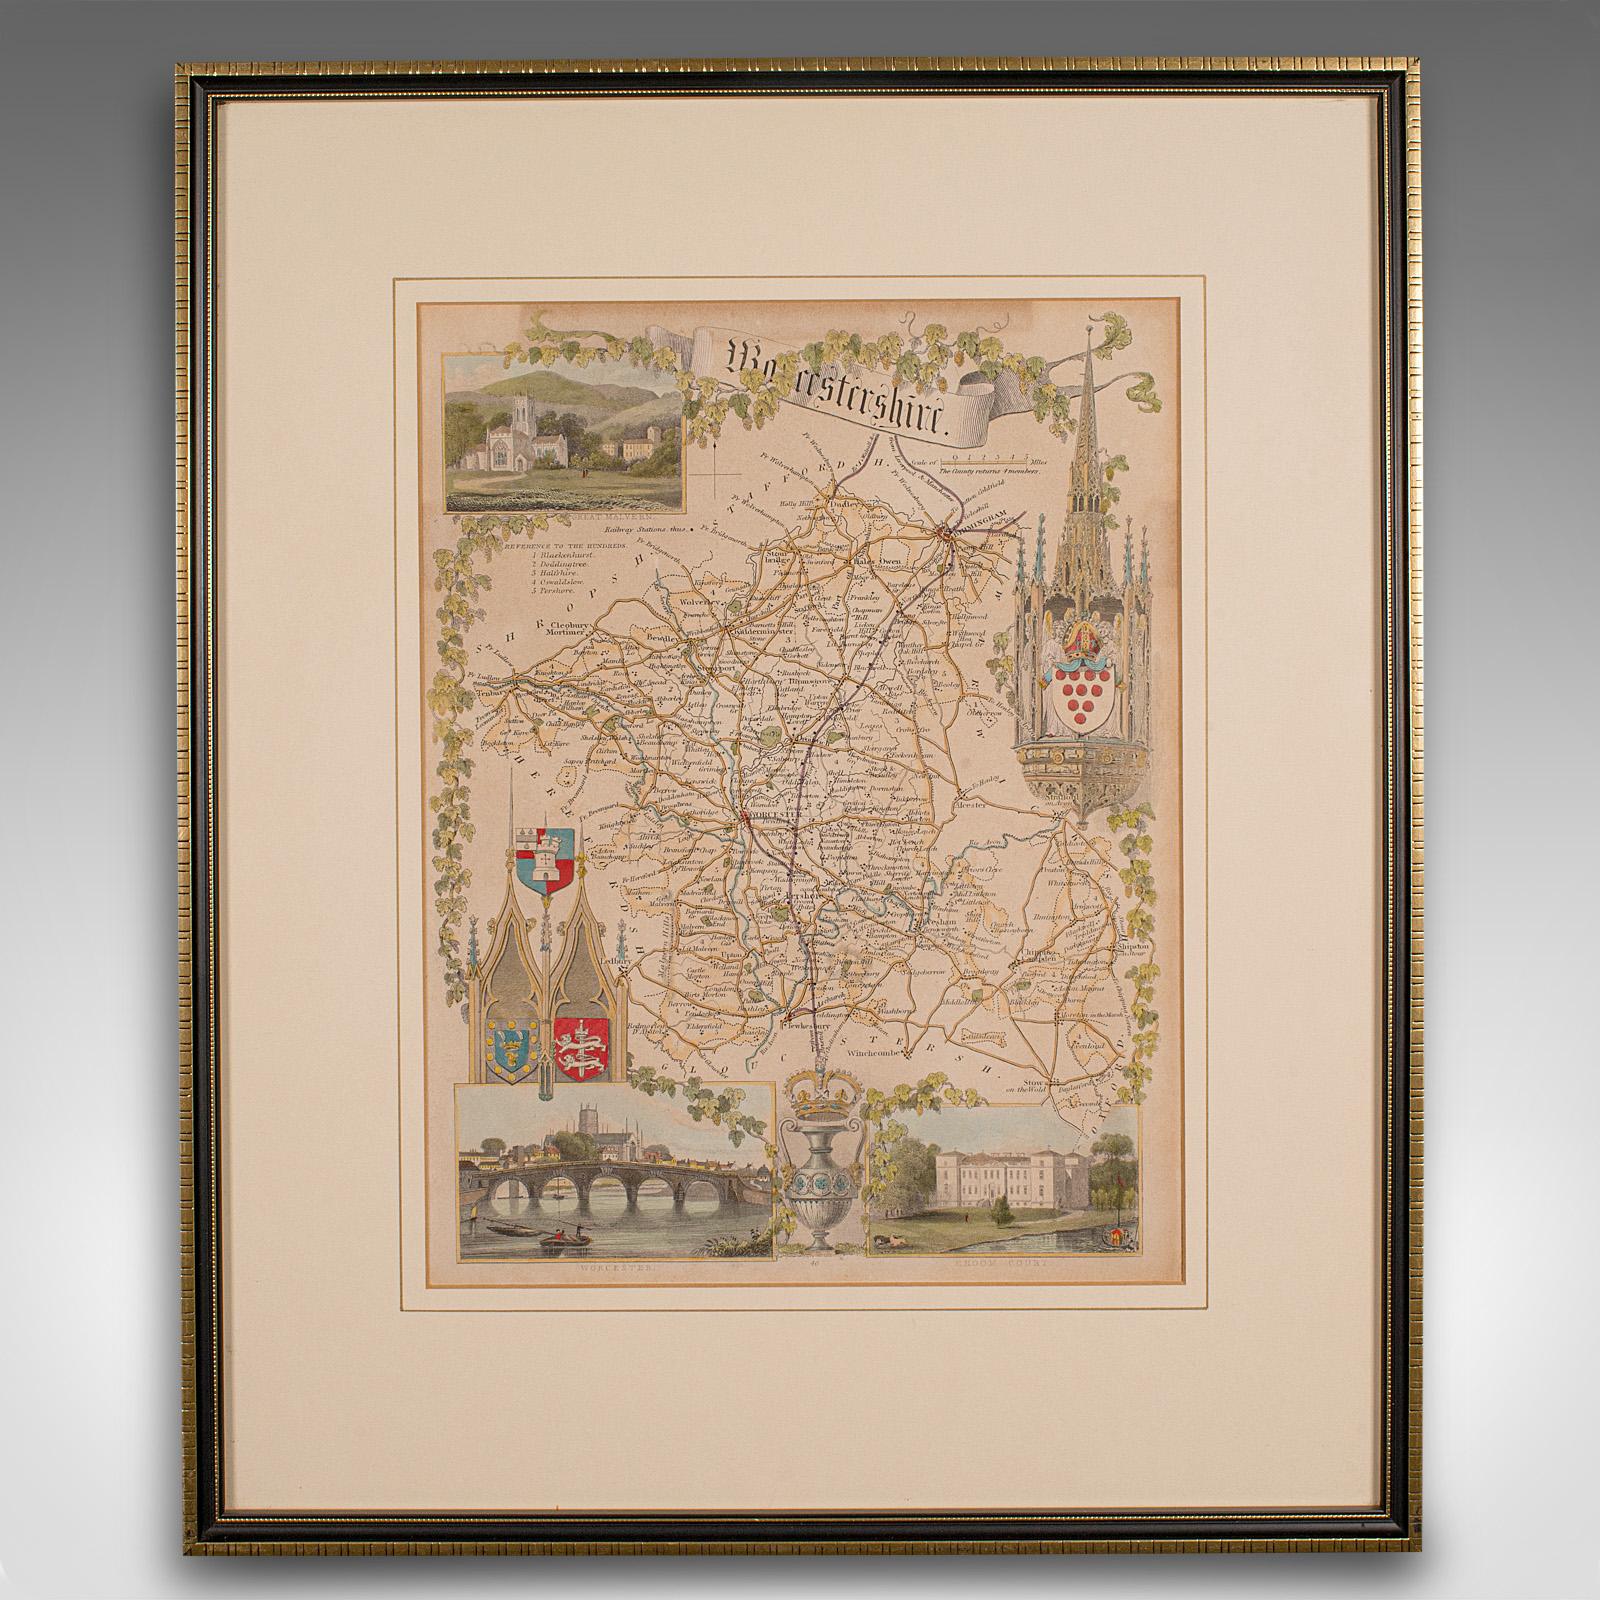 
Il s'agit d'une carte lithographique ancienne du Worcestershire. Gravure d'atlas anglaise encadrée, d'intérêt cartographique, datant du début du XIXe siècle ou plus tard.

Superbe lithographie du Worcestershire et de son comté, parfaite pour